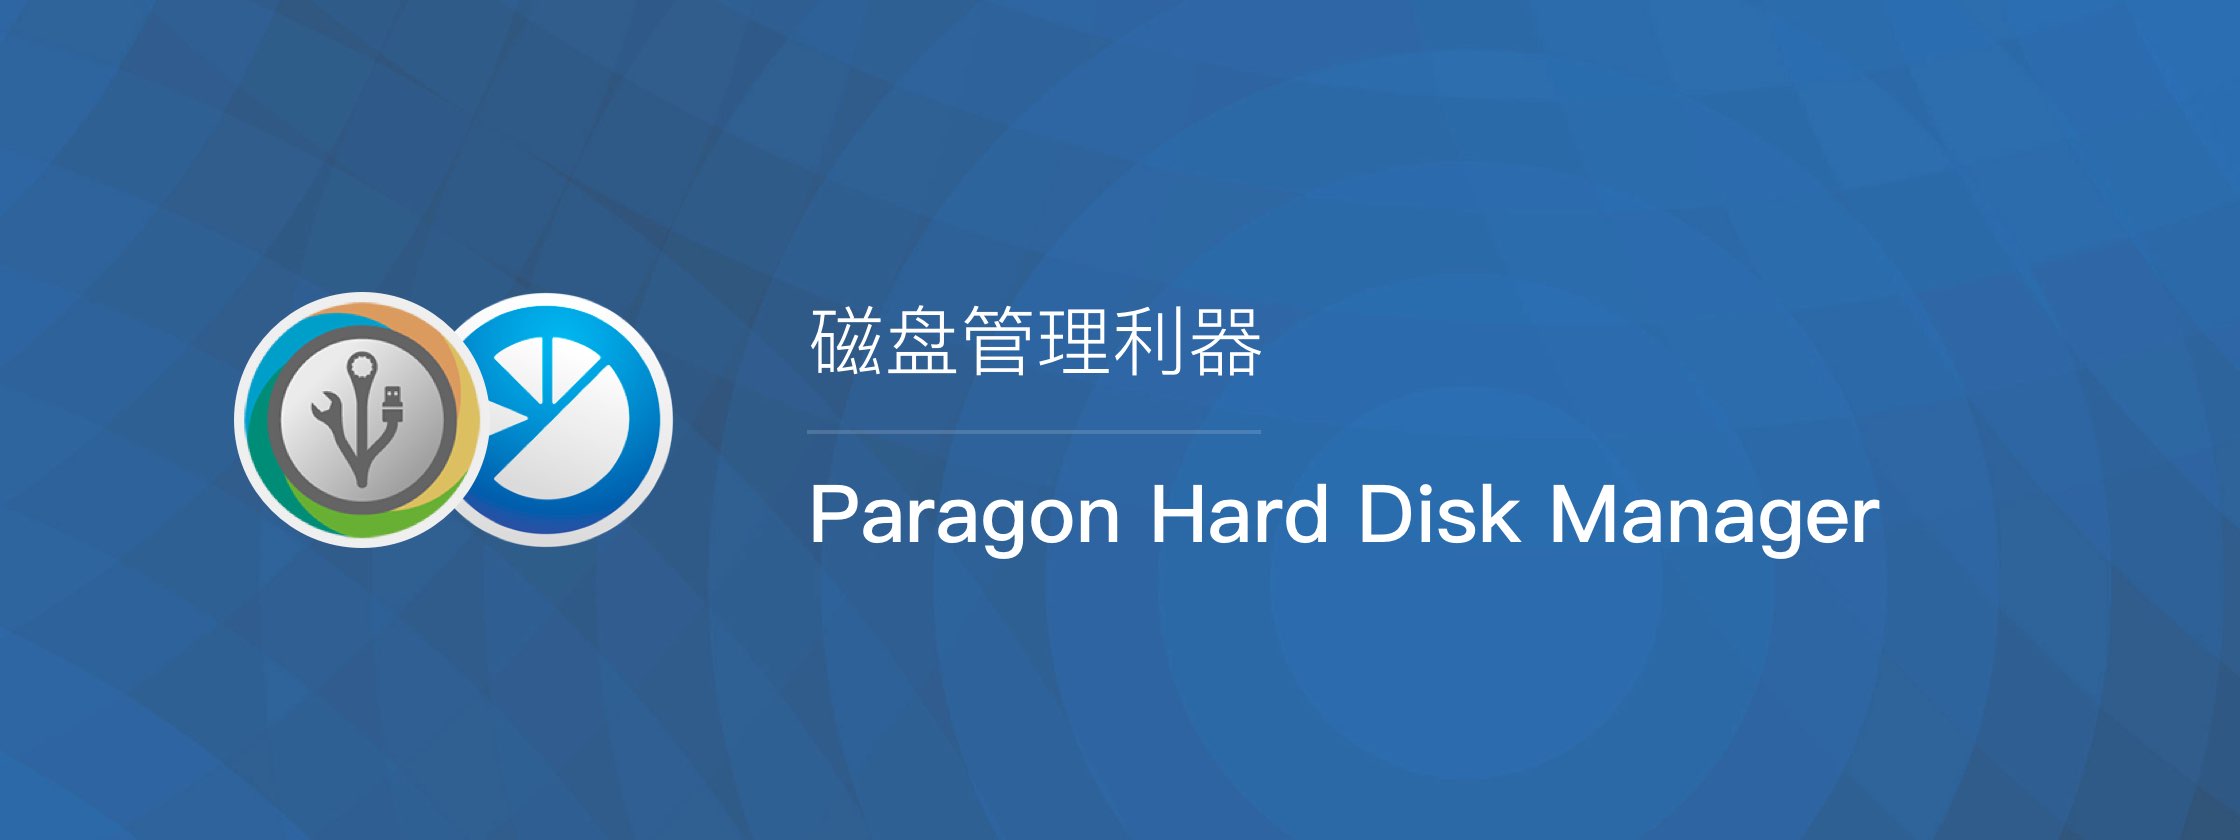 安全可靠的磁盘管理利器 Paragon Hard Disk Manager